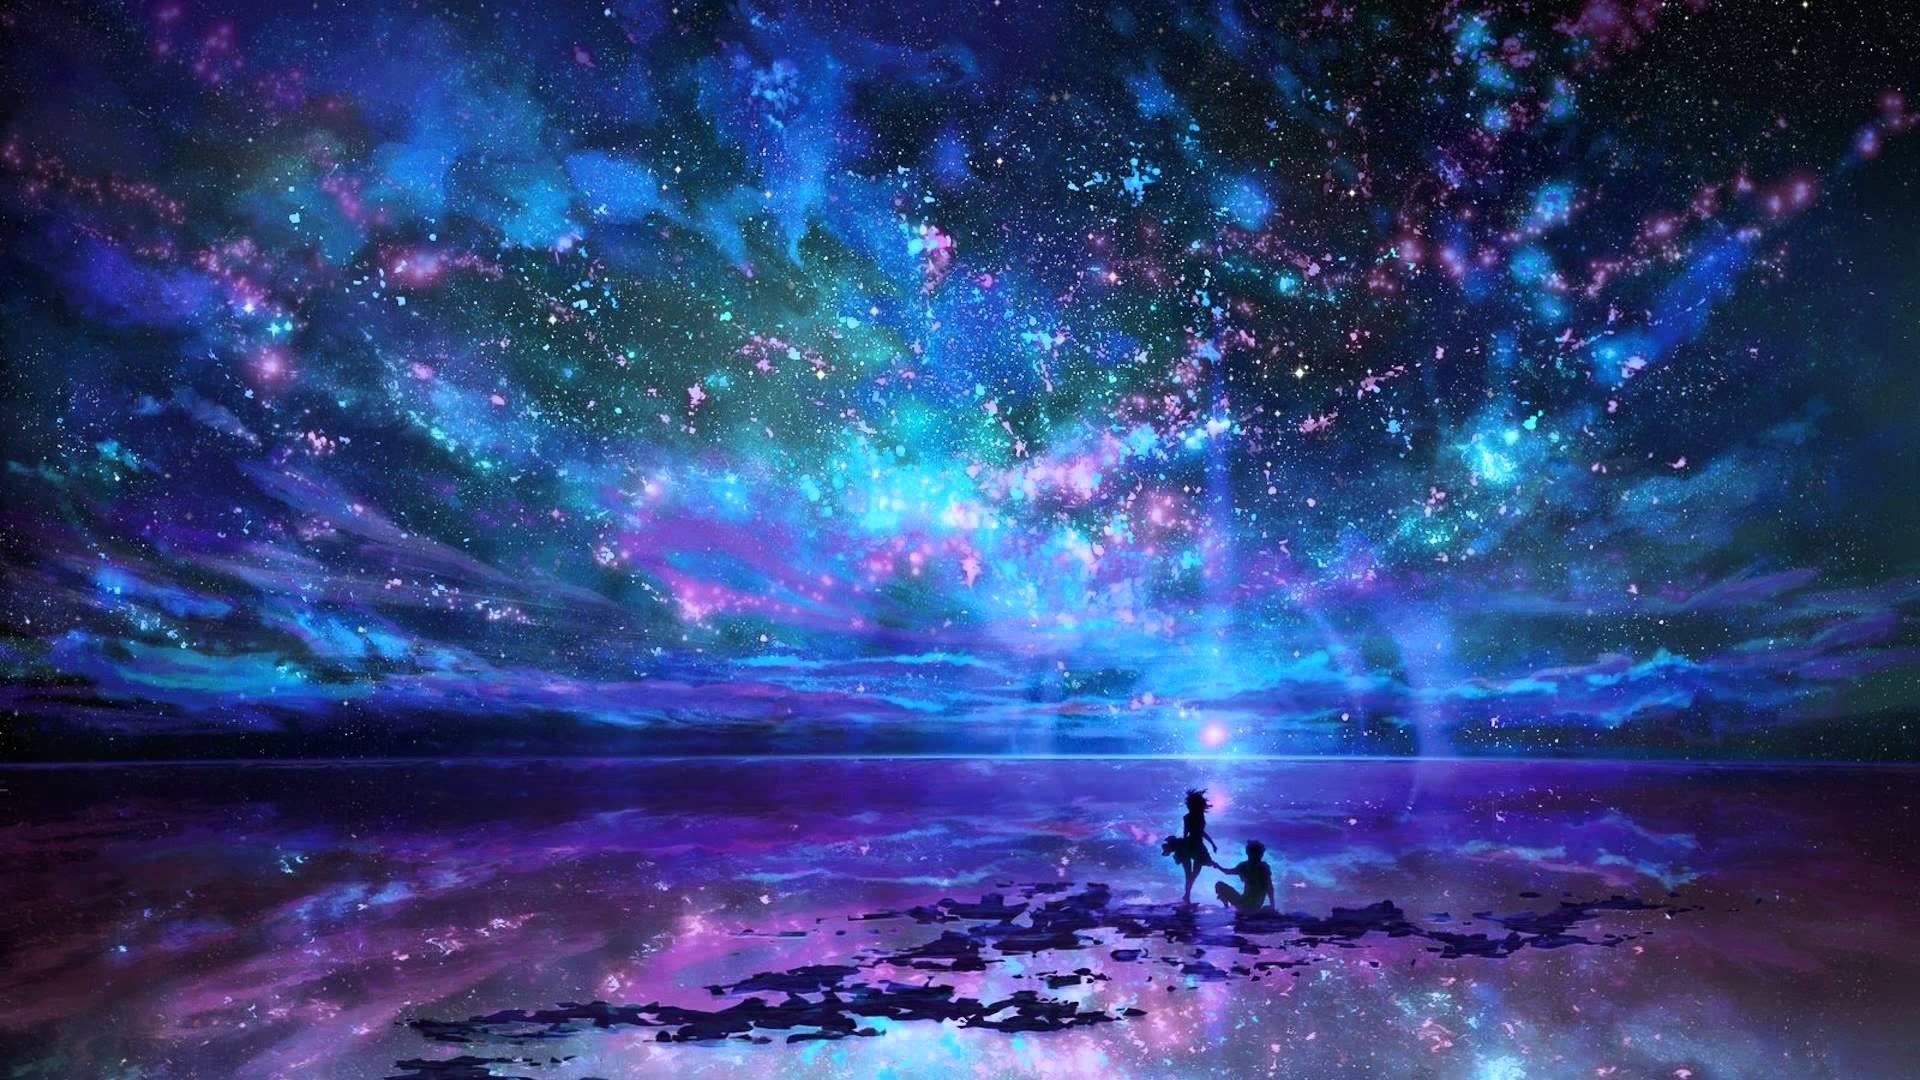 Digital Art Space Sky Scenery HD Wallpaperx1080. Anime scenery, Landscape wallpaper, Fantasy star